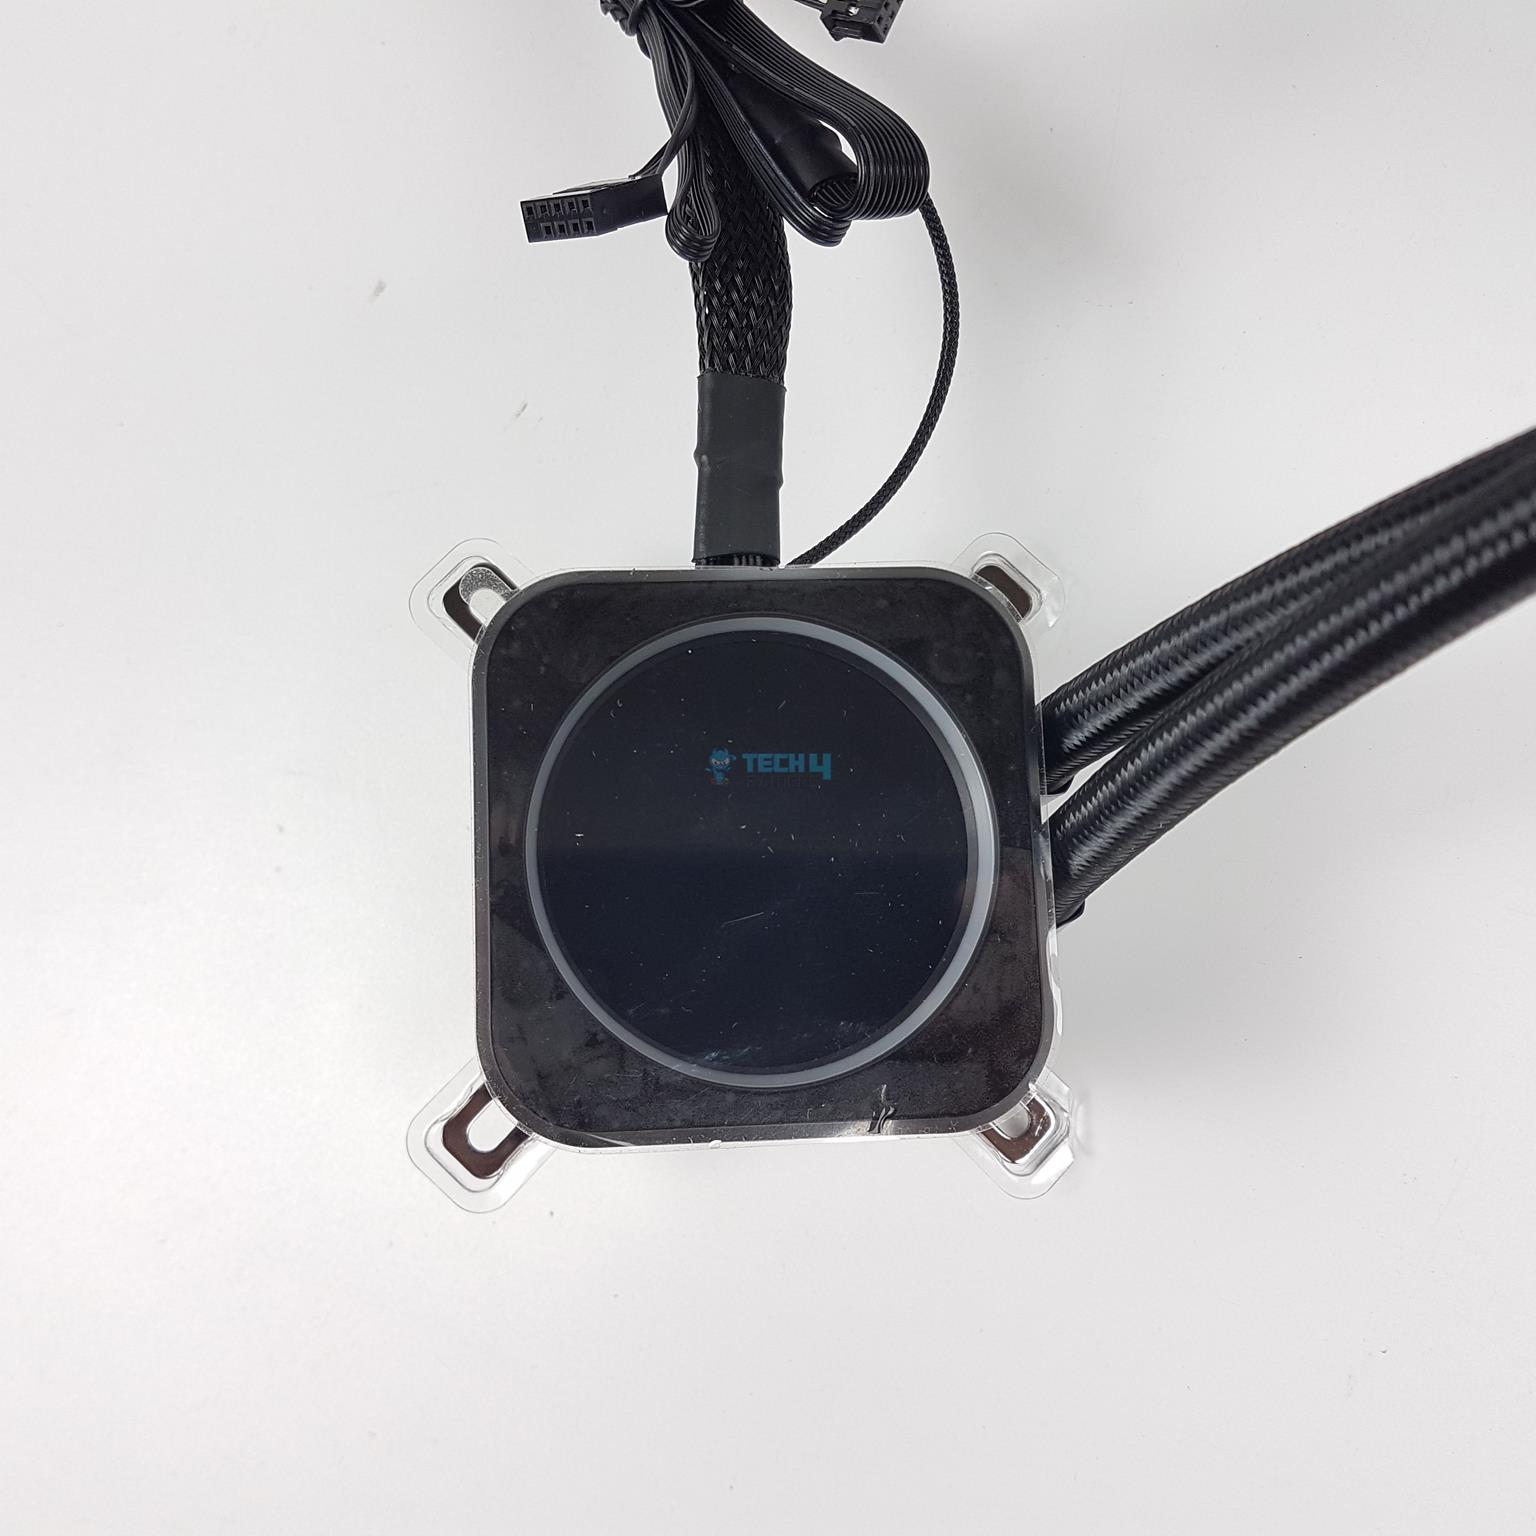 CORSAIR iCUE H170i Elite LCD XT — Pump 2 Copy